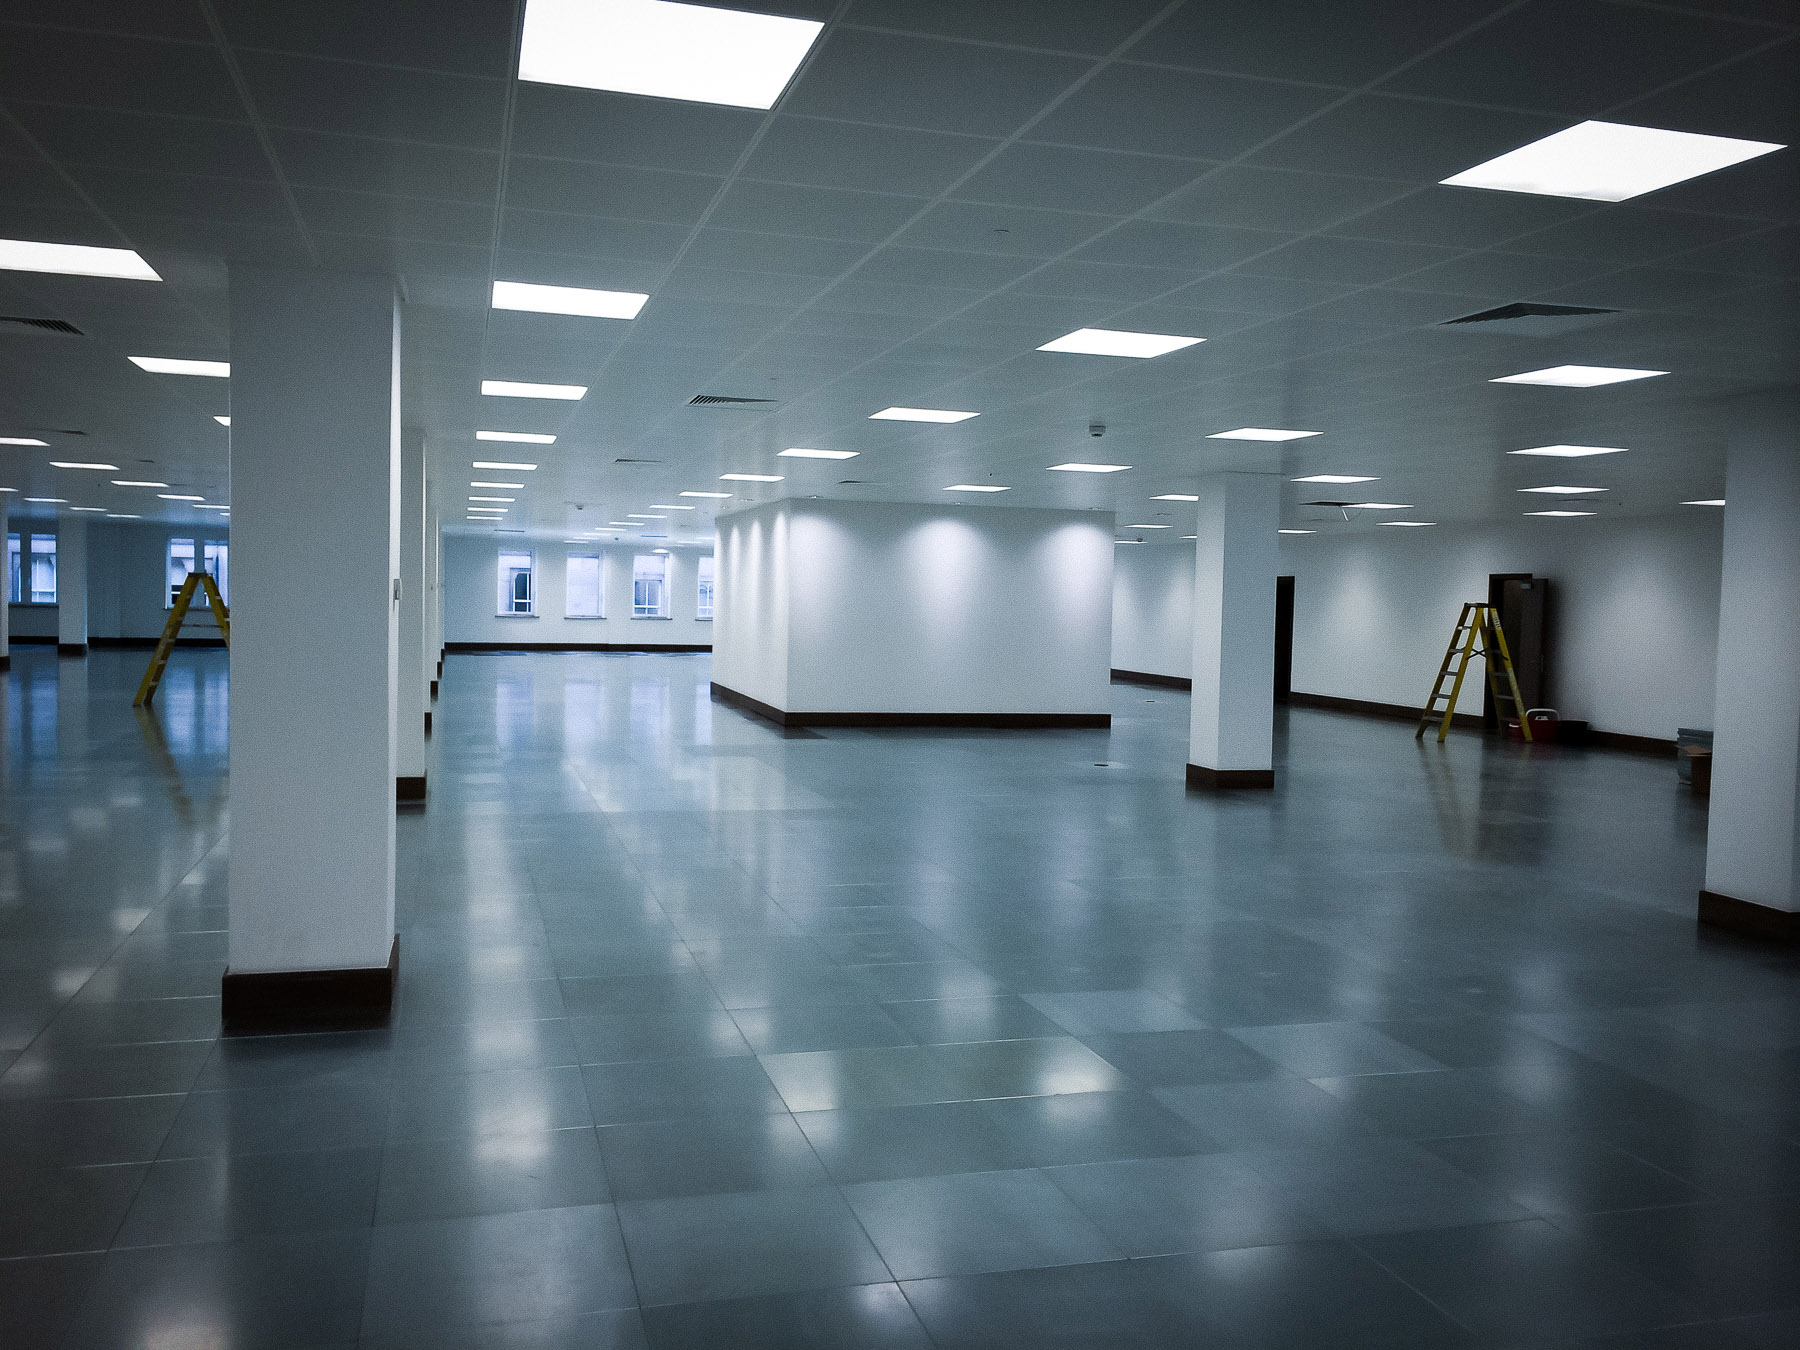 Empty modern office